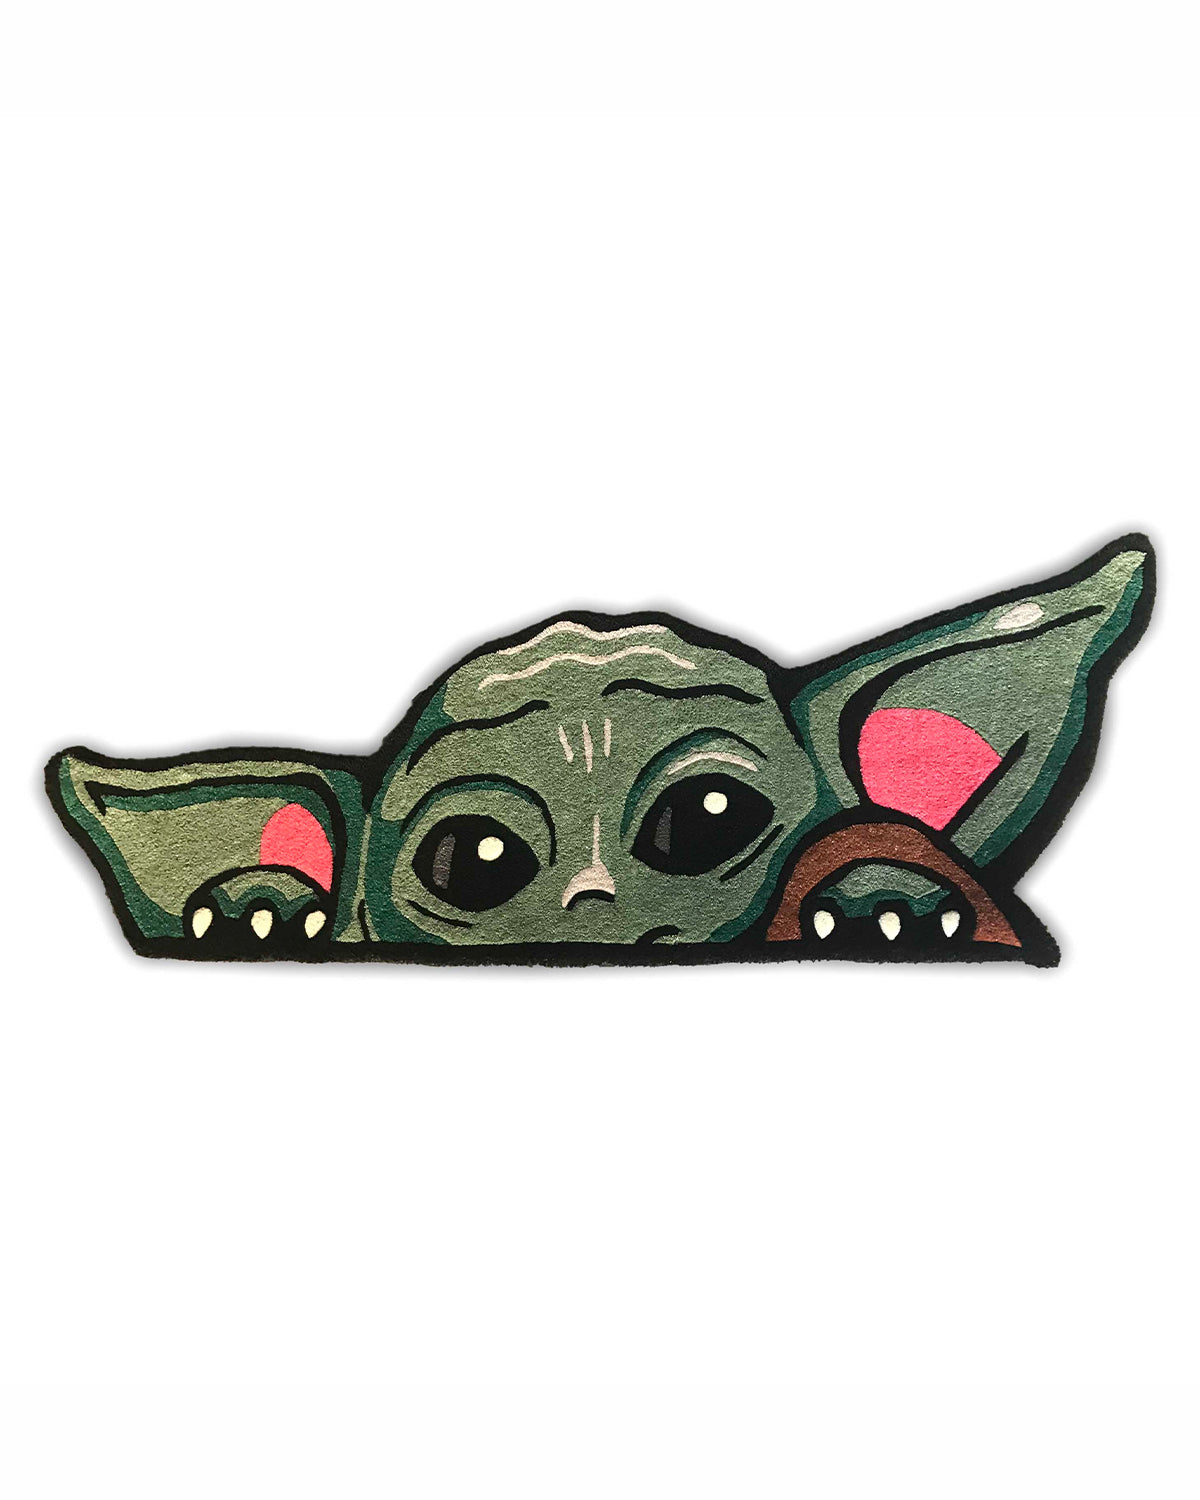 Baby Yoda Rug